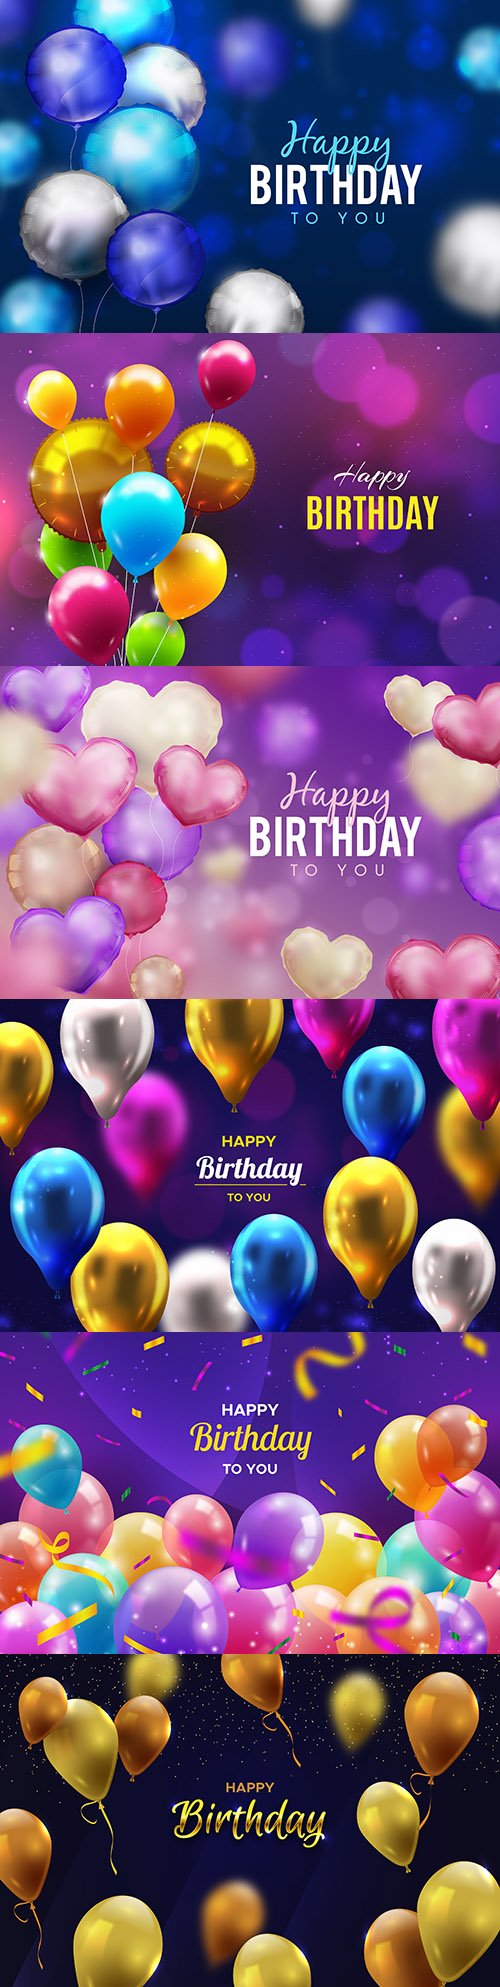 Happy birthday holiday invitation realistic balloons 11